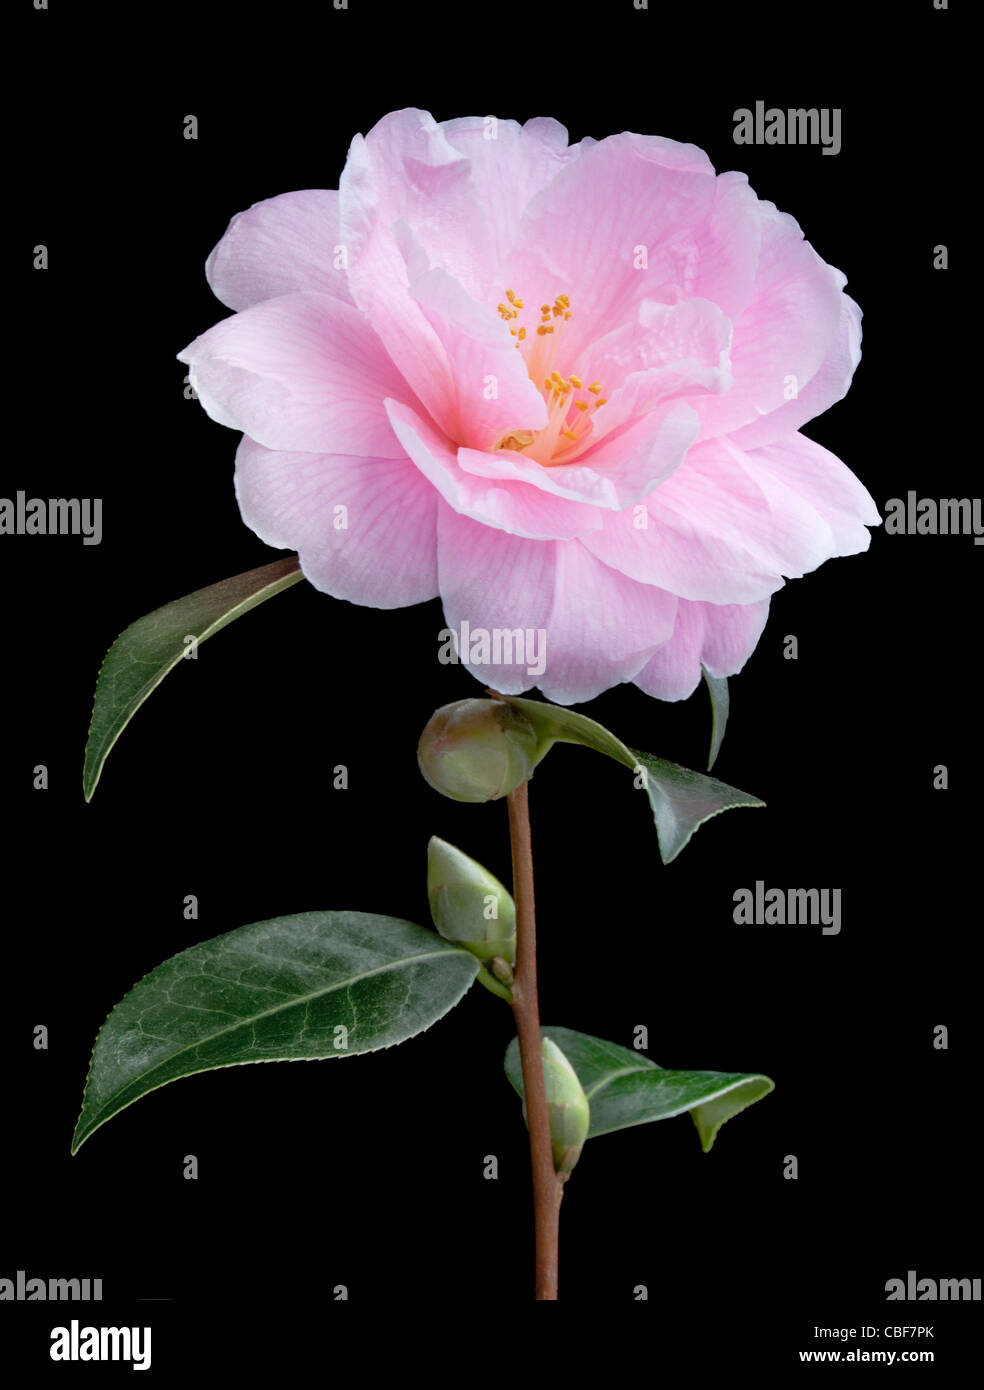 Camellia x williamsii 'Donation', camelie, fiore rosa soggetto, sfondo nero. Foto Stock